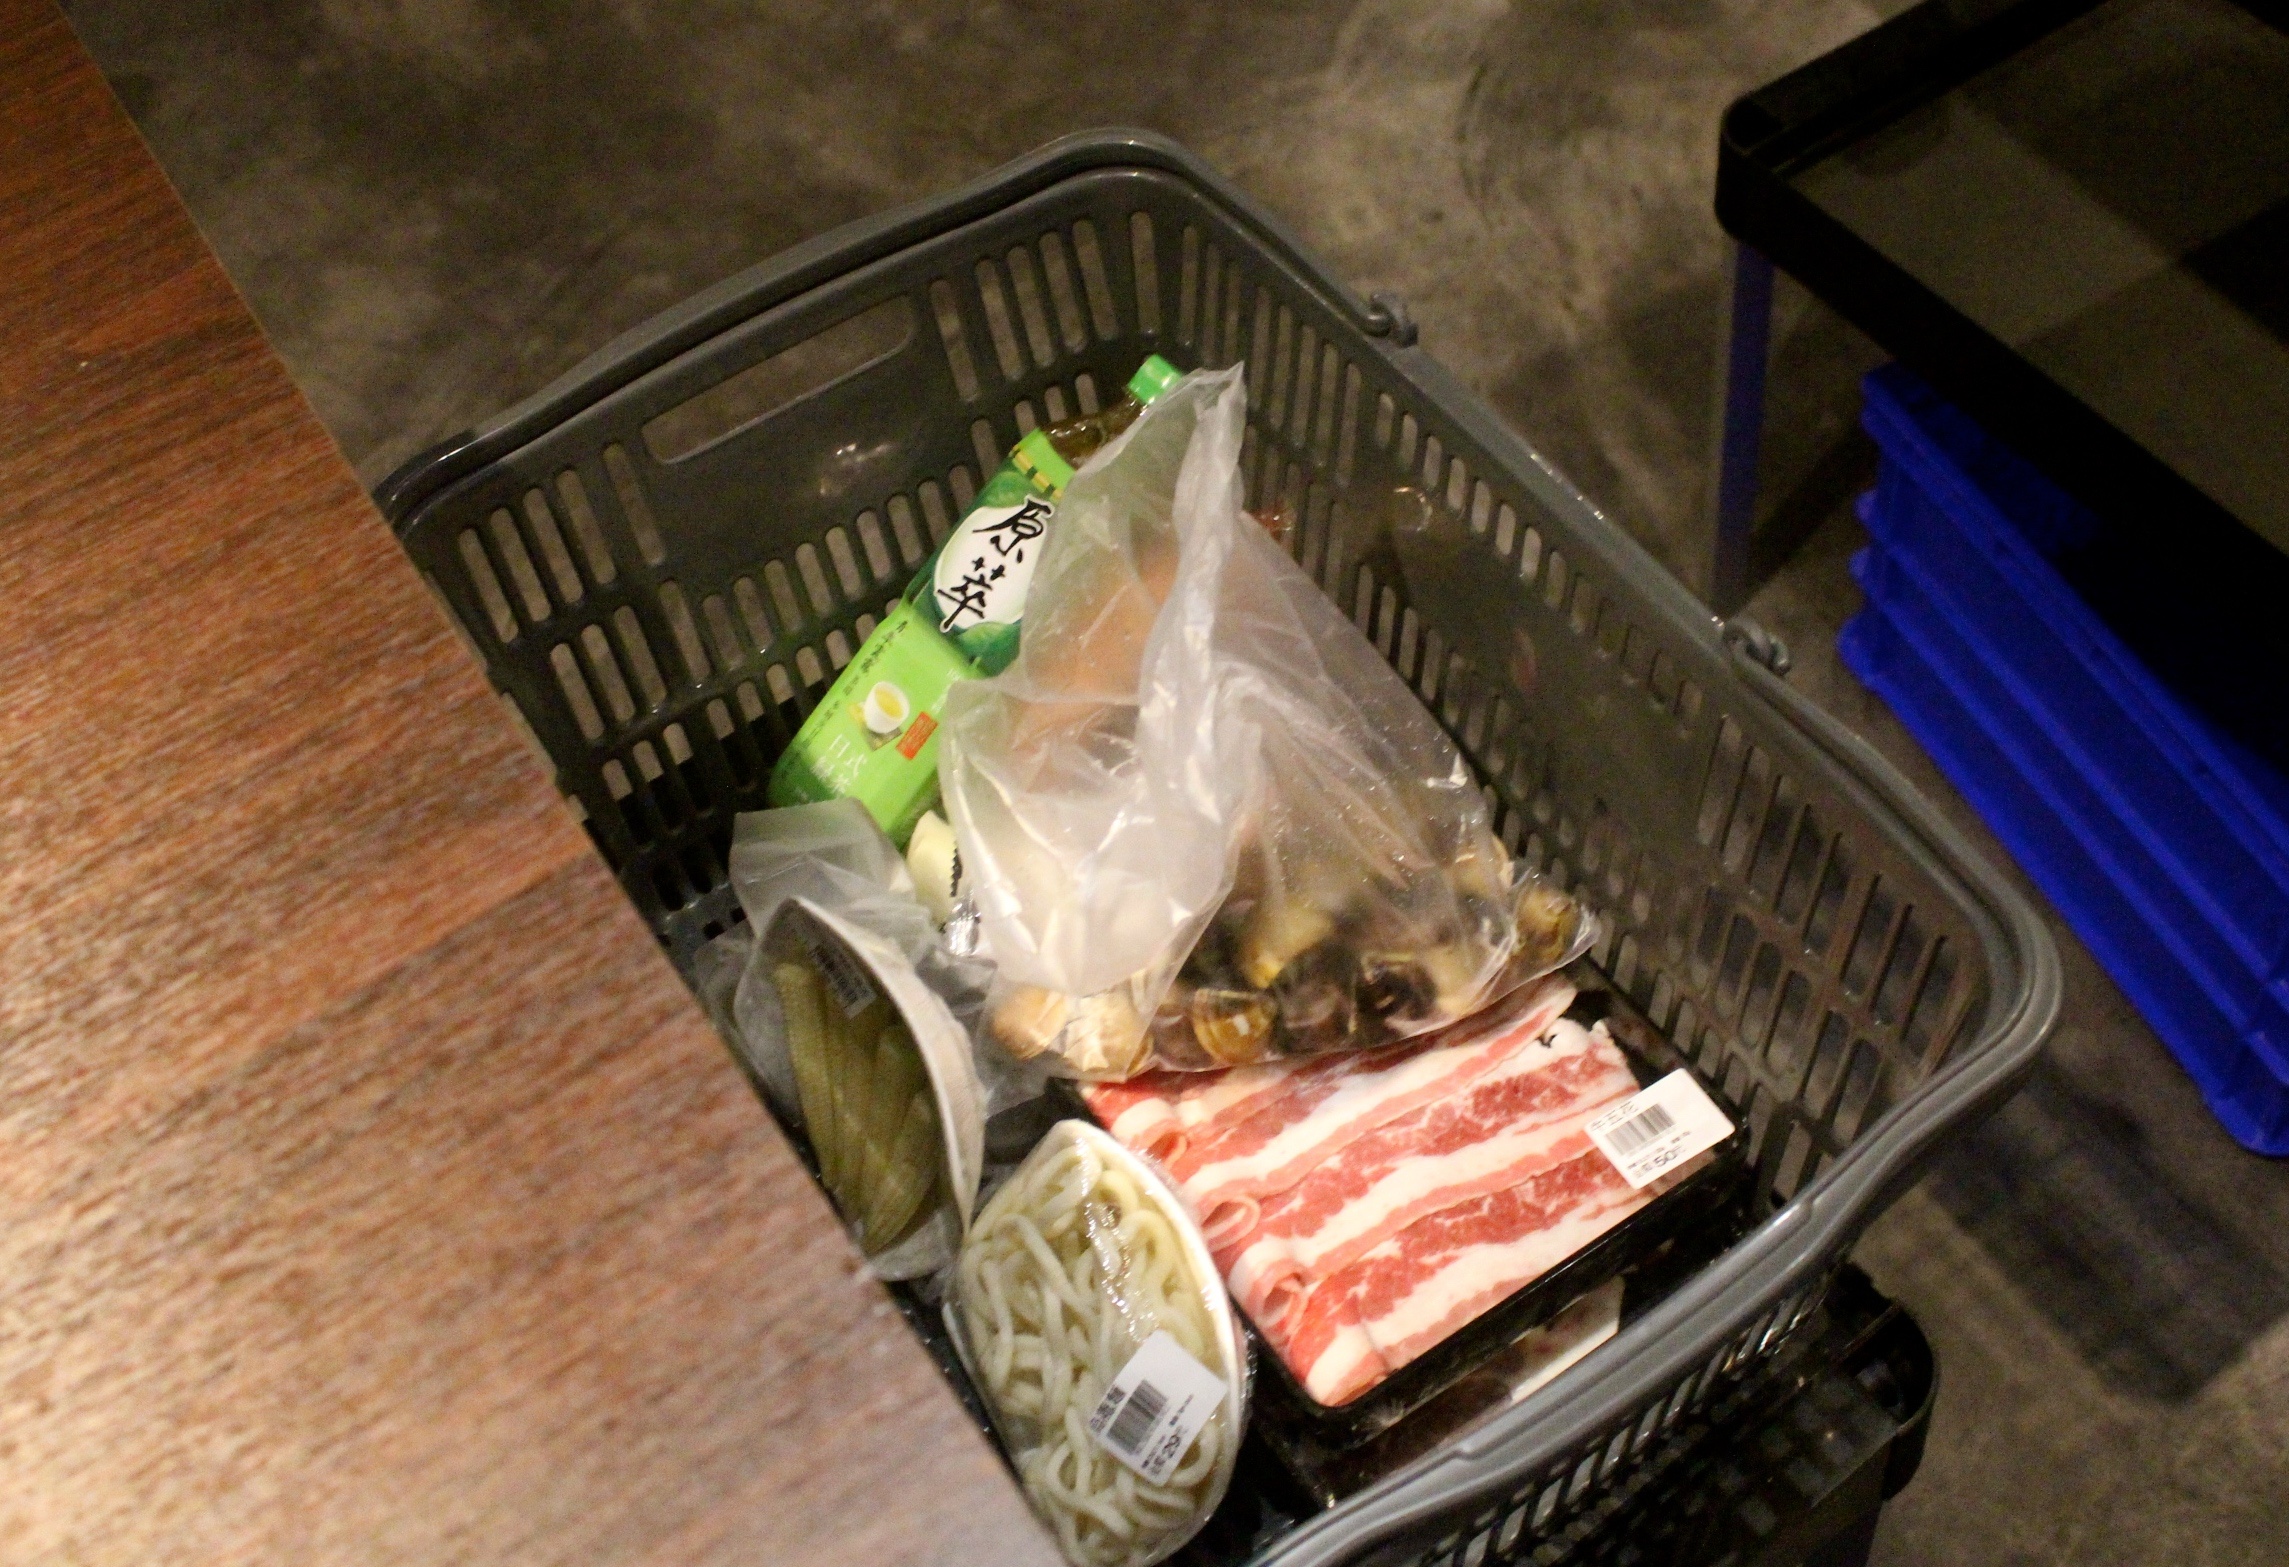 【桃園 超越水產】肉多多品牌也有超市火鍋。活體海鮮水族箱/提供免費蒸籠